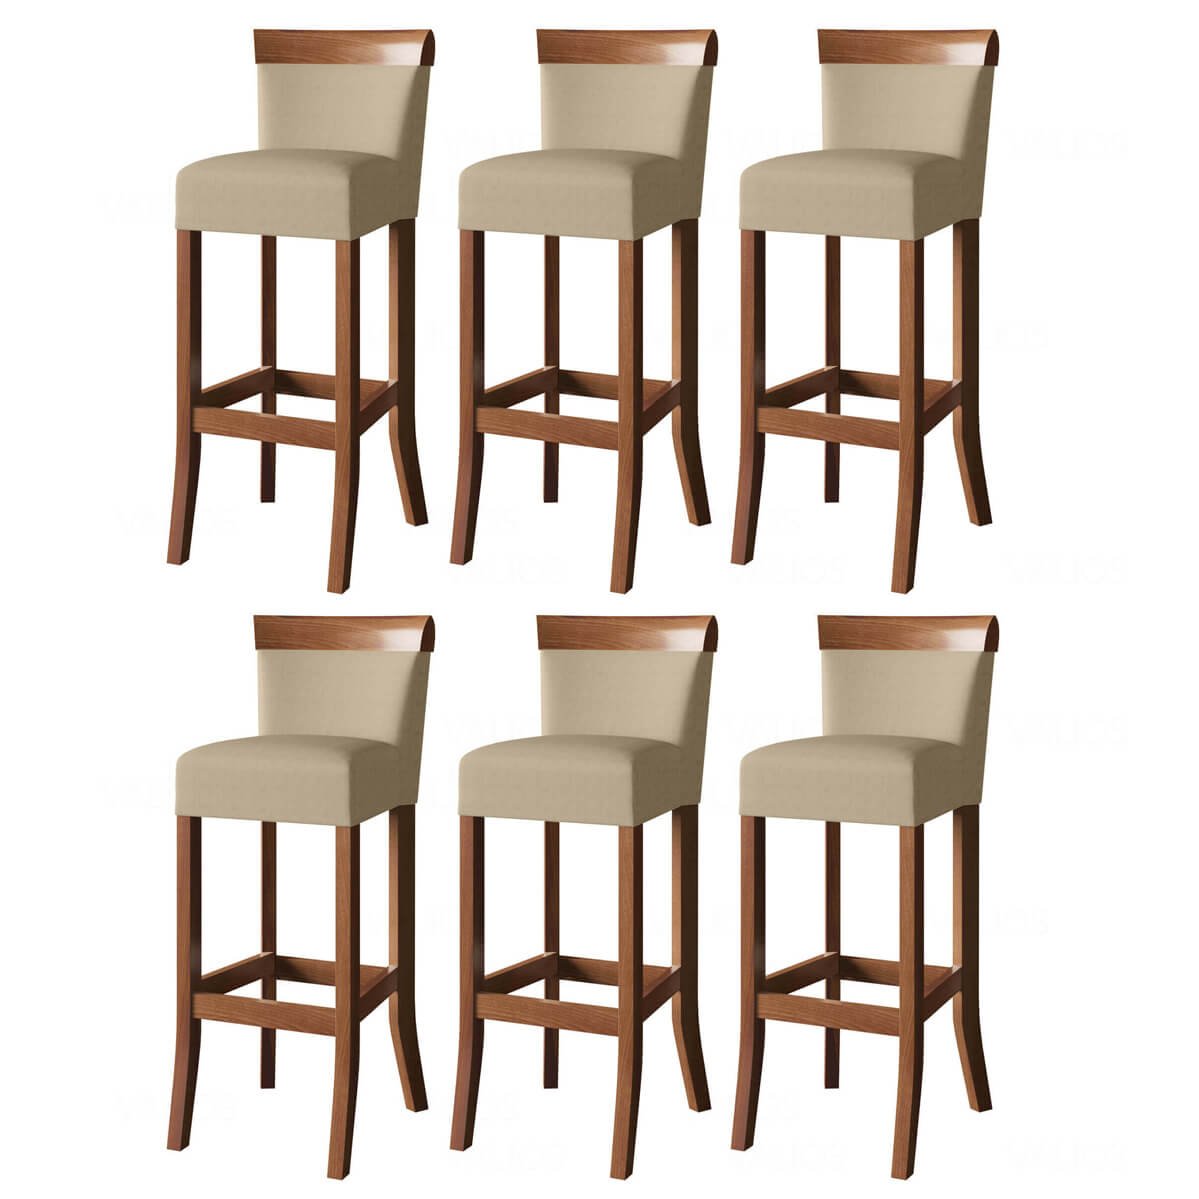 Jogo com 6 cadeira para bancada banco alto de madeira bar cozinha americana encosto estofado Valios